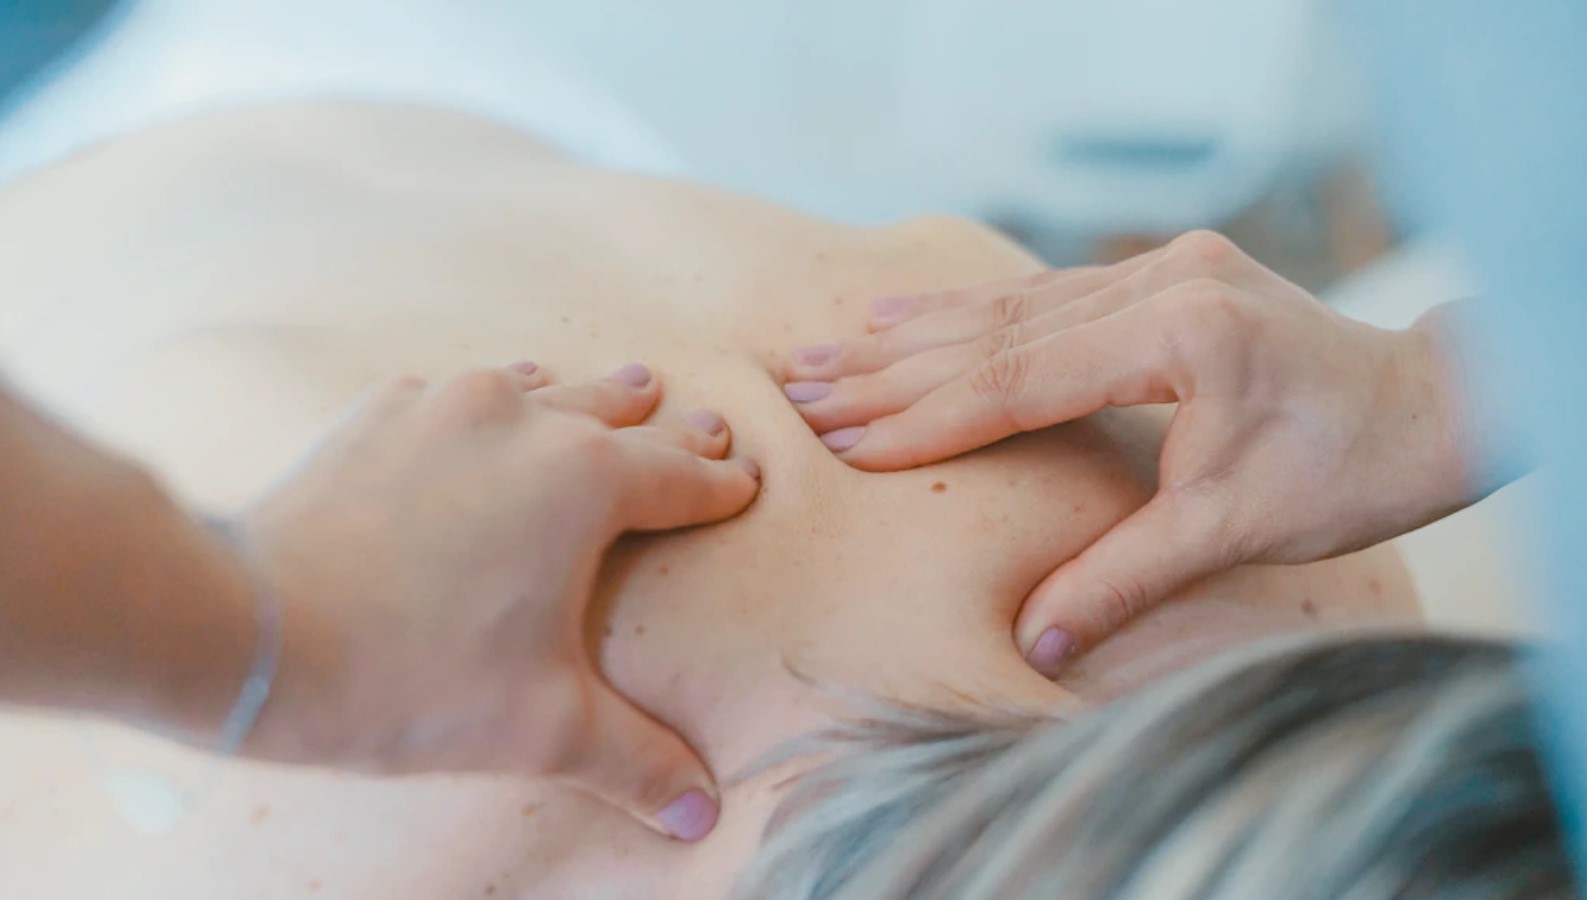 Massage-uddannelse: Hvordan bliver jeg massør?